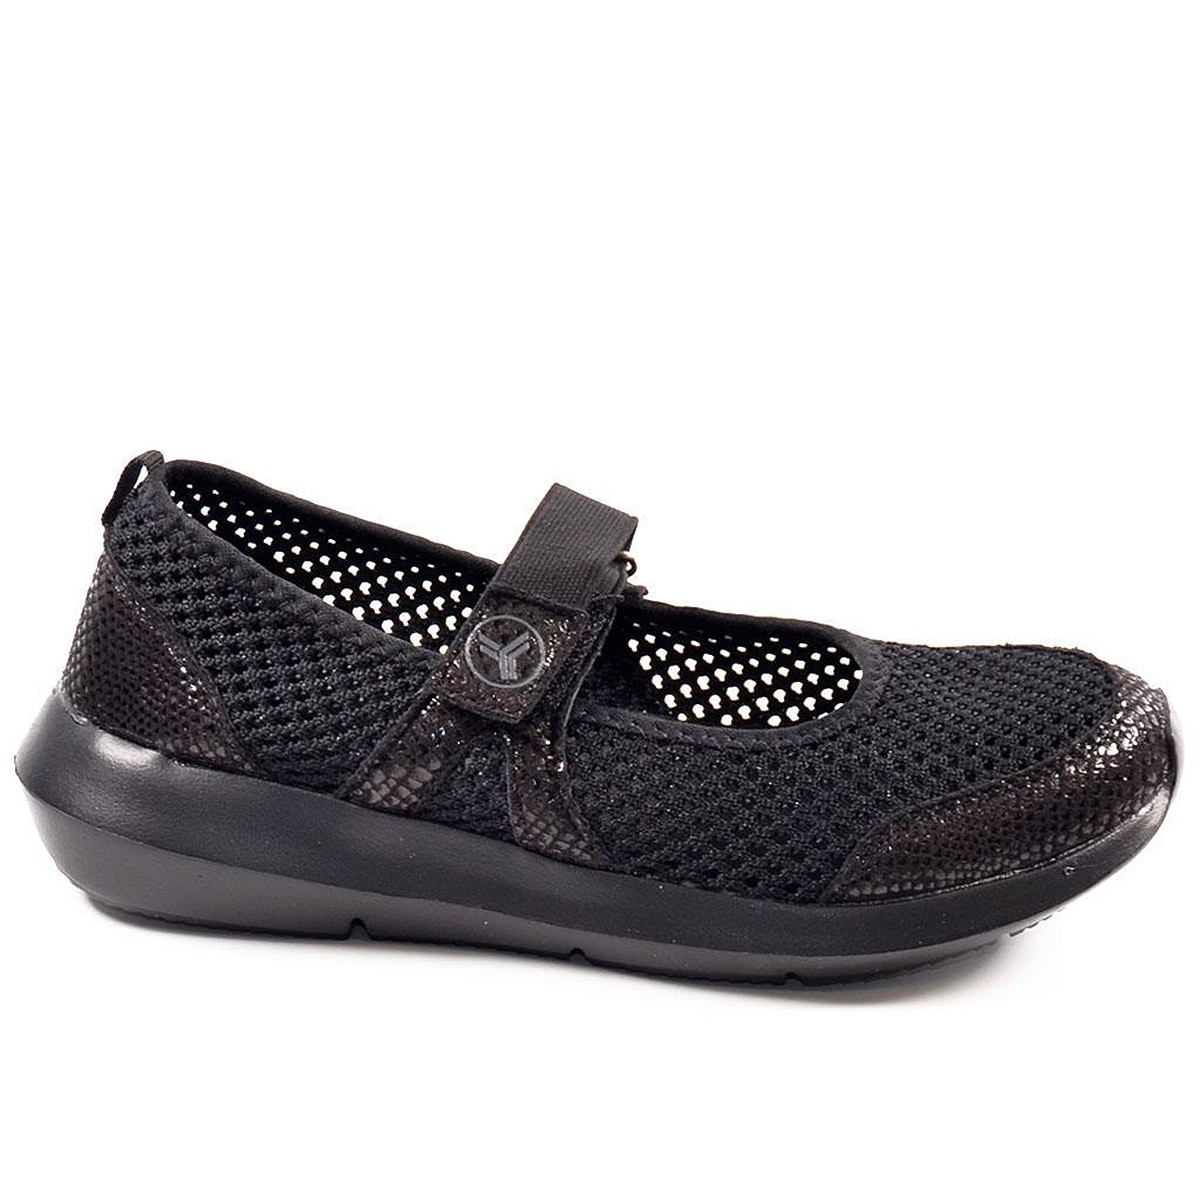 Kendall Yumas Zapato Zapato nylon perforado, cierre velcro ajustable. Plantilla confort látex y piso eva termo conformada. Liger